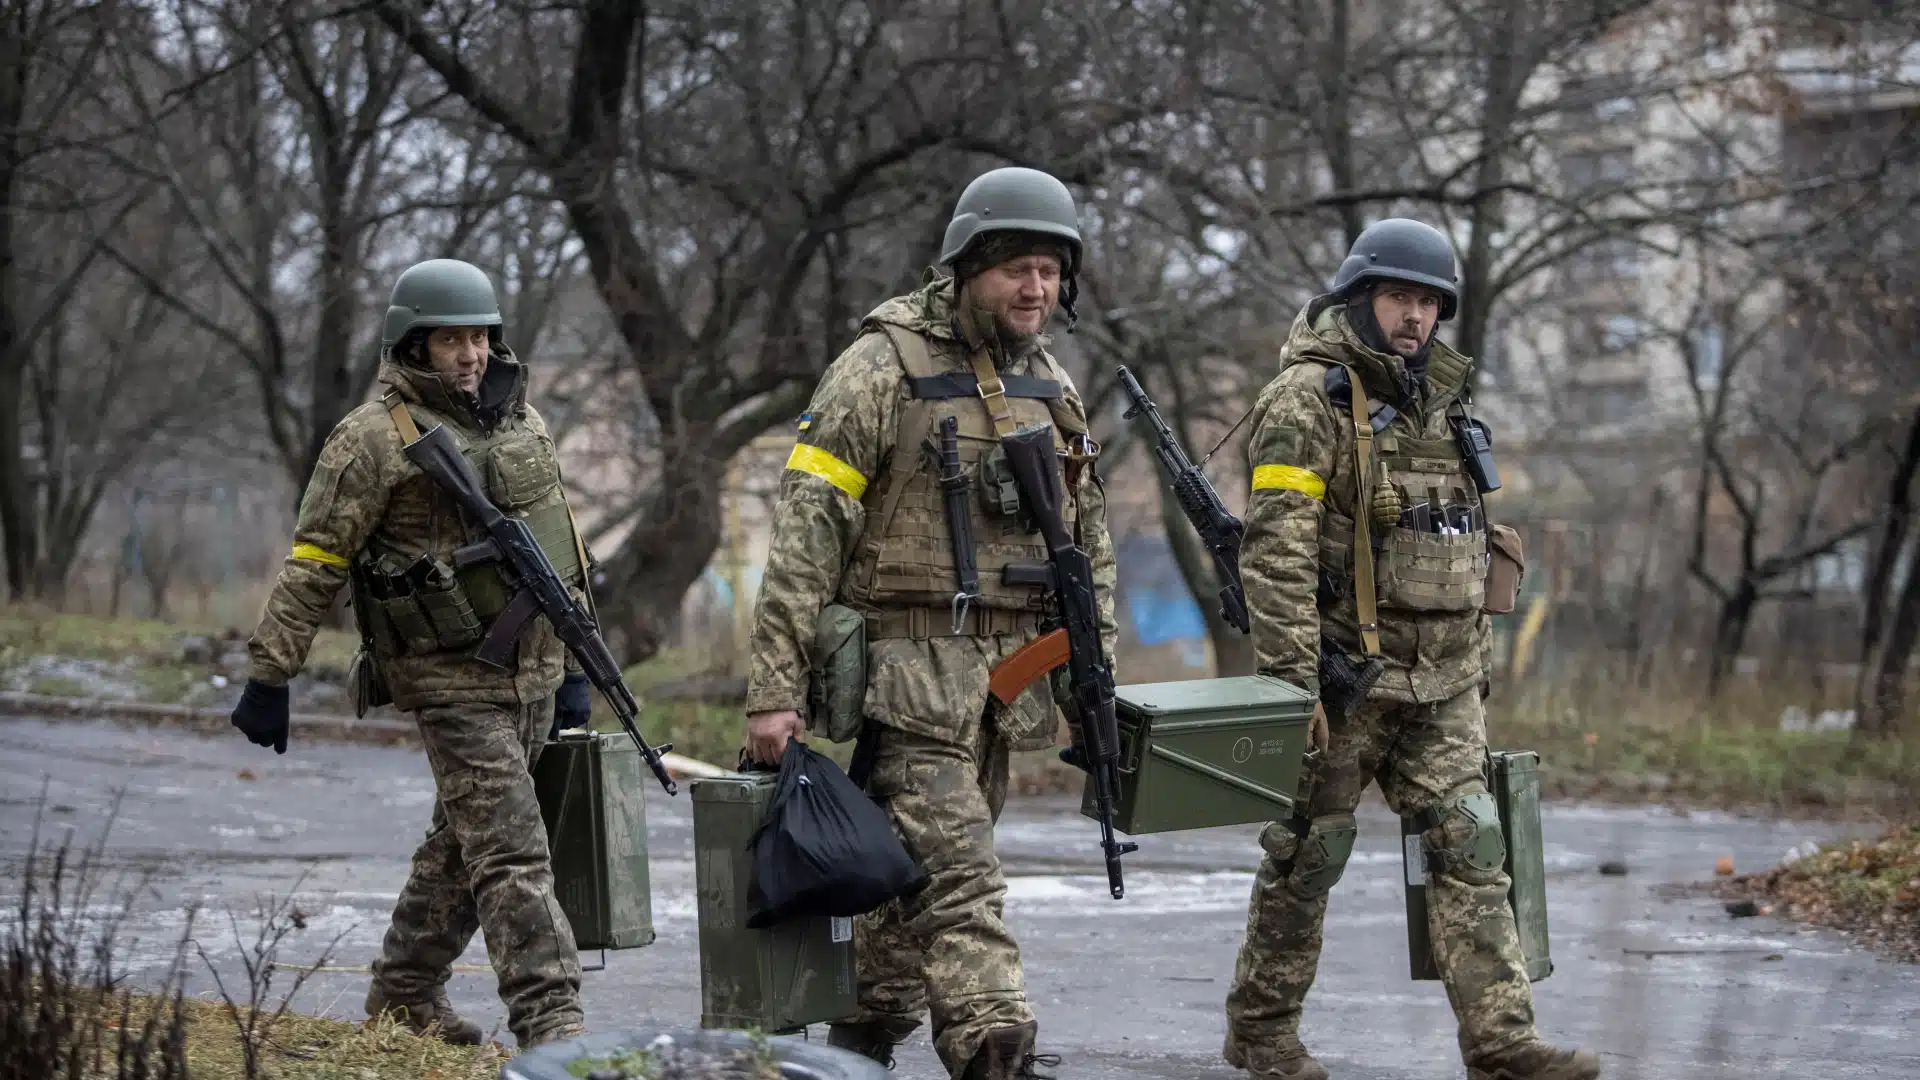 أوكرانيا "تماطل" في باخموت وتستنزف روسيا وطريق الإنسحاب أغلق